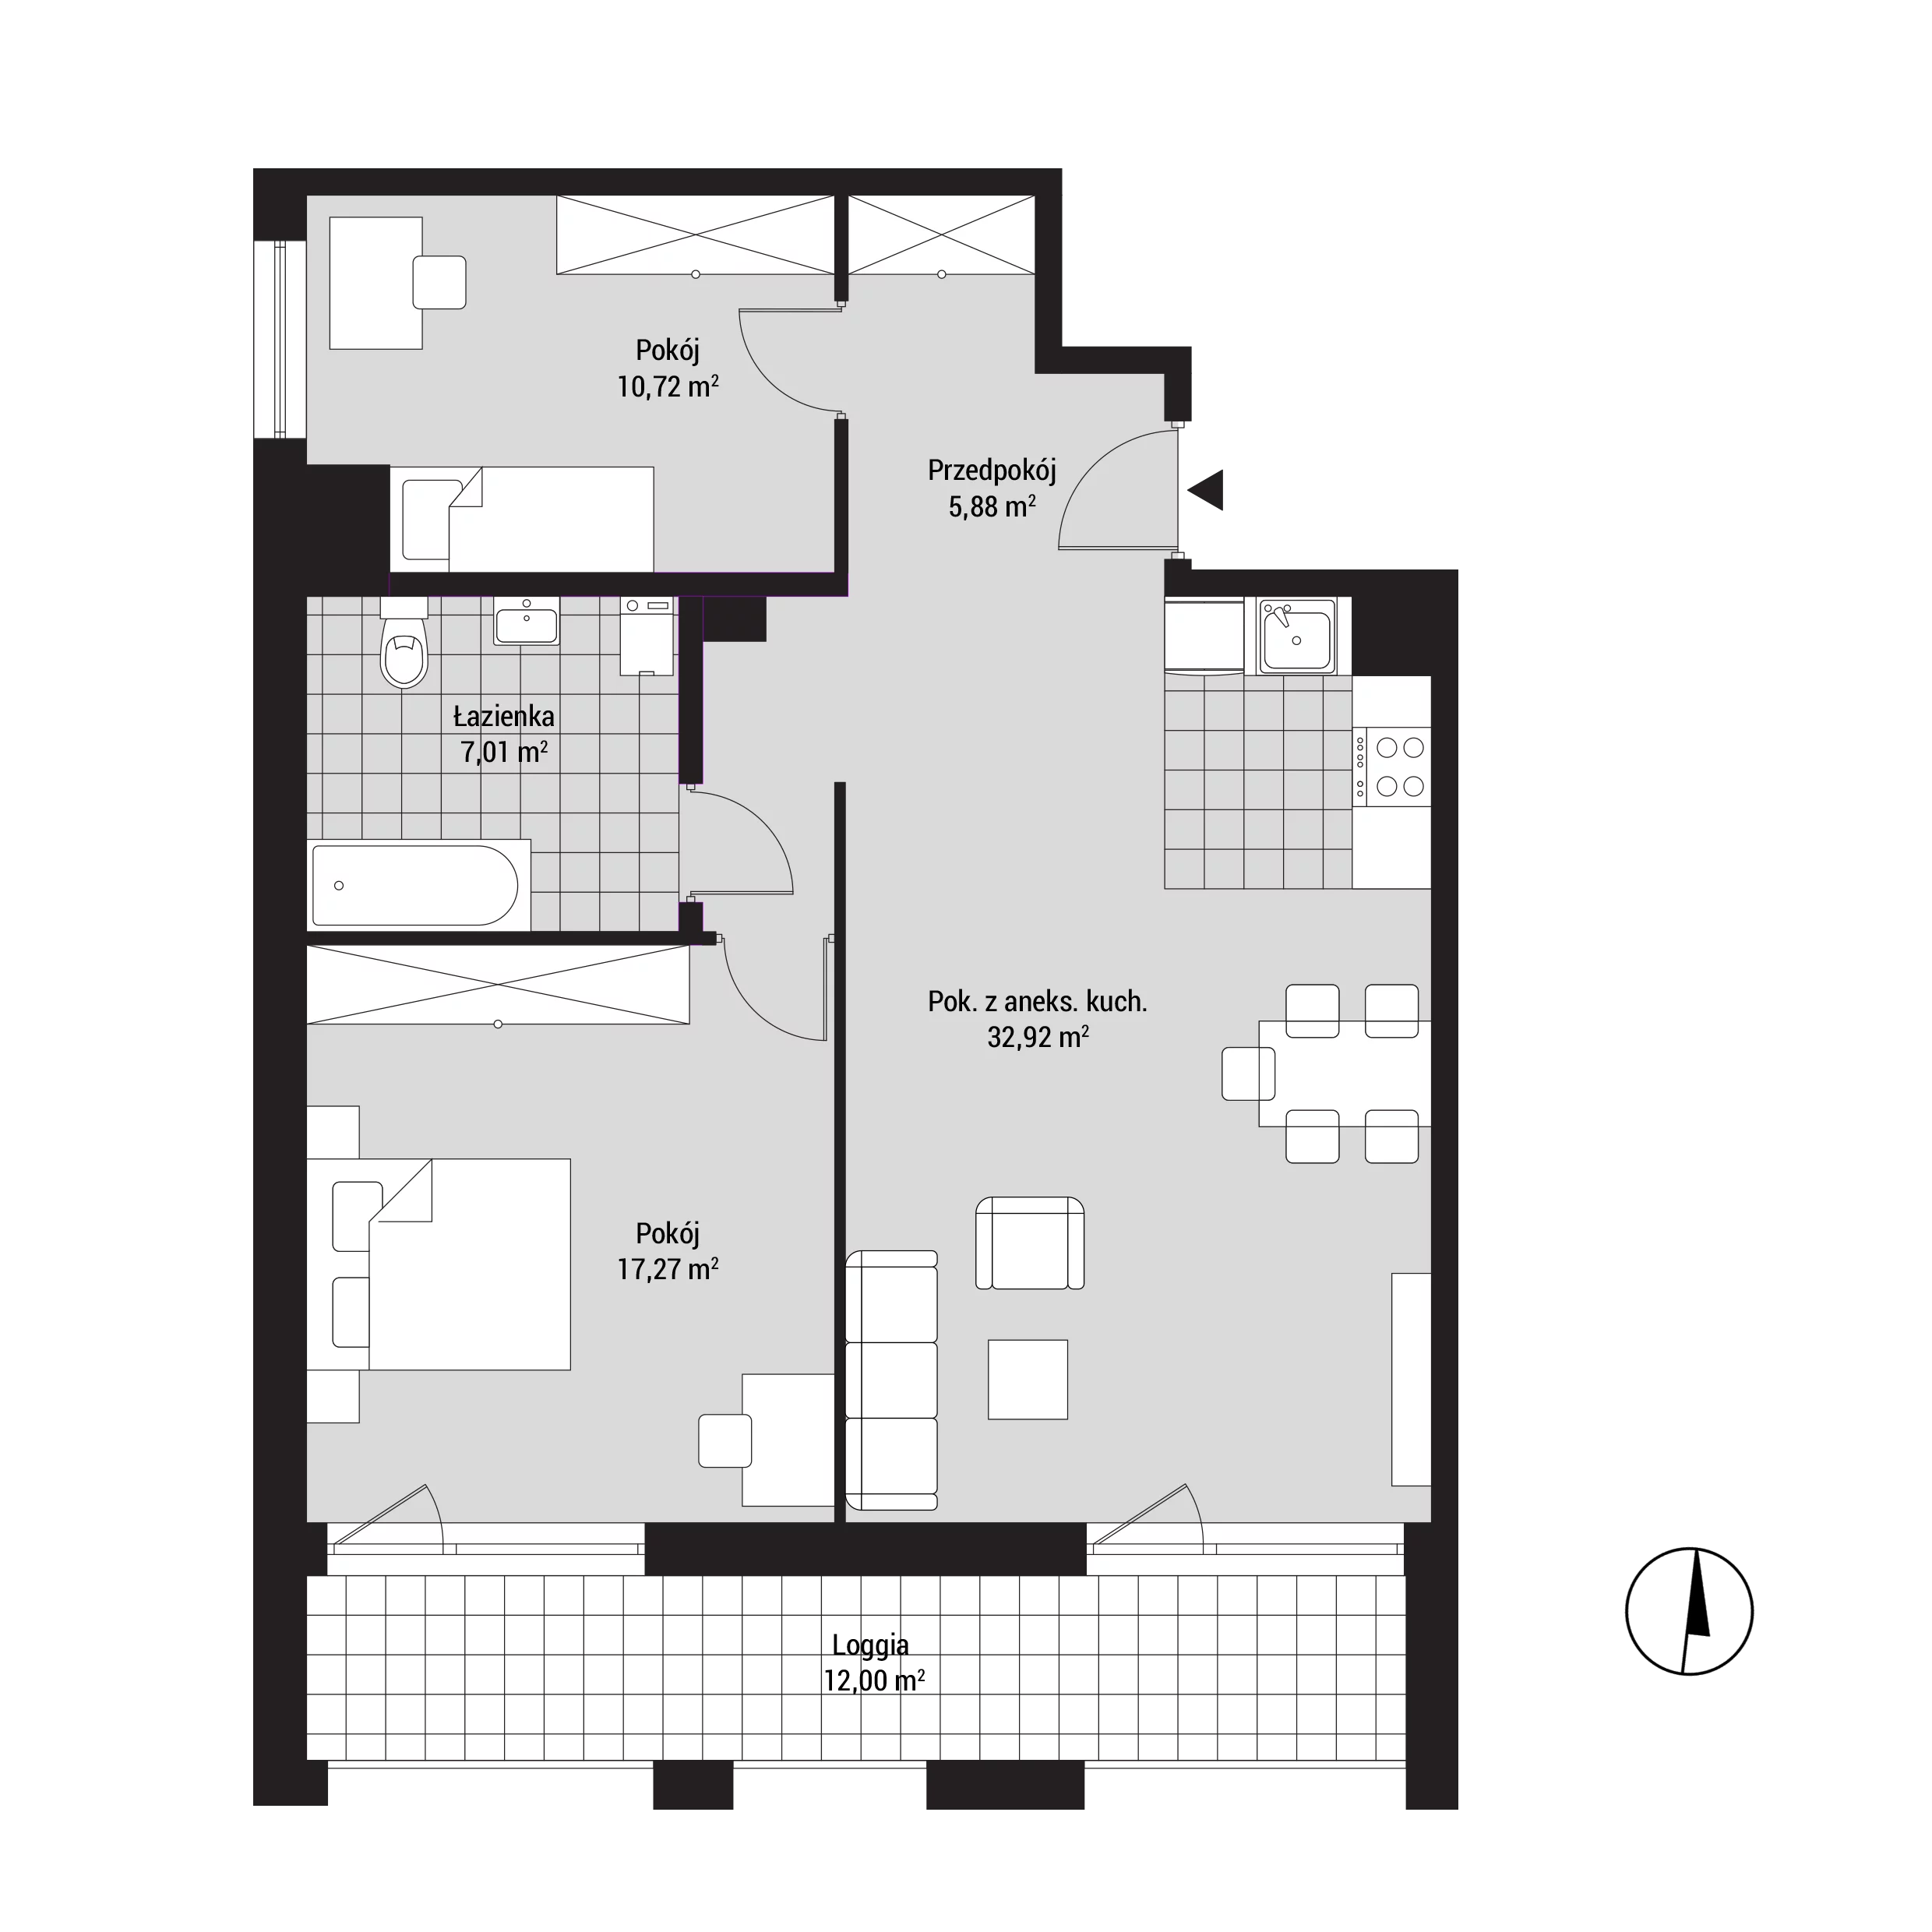 Mieszkanie 74,80 m², piętro 3, oferta nr mieszkanie A34, Na Koszutce, Katowice, Śródmieście, Koszutka, ul. Słoneczna 1